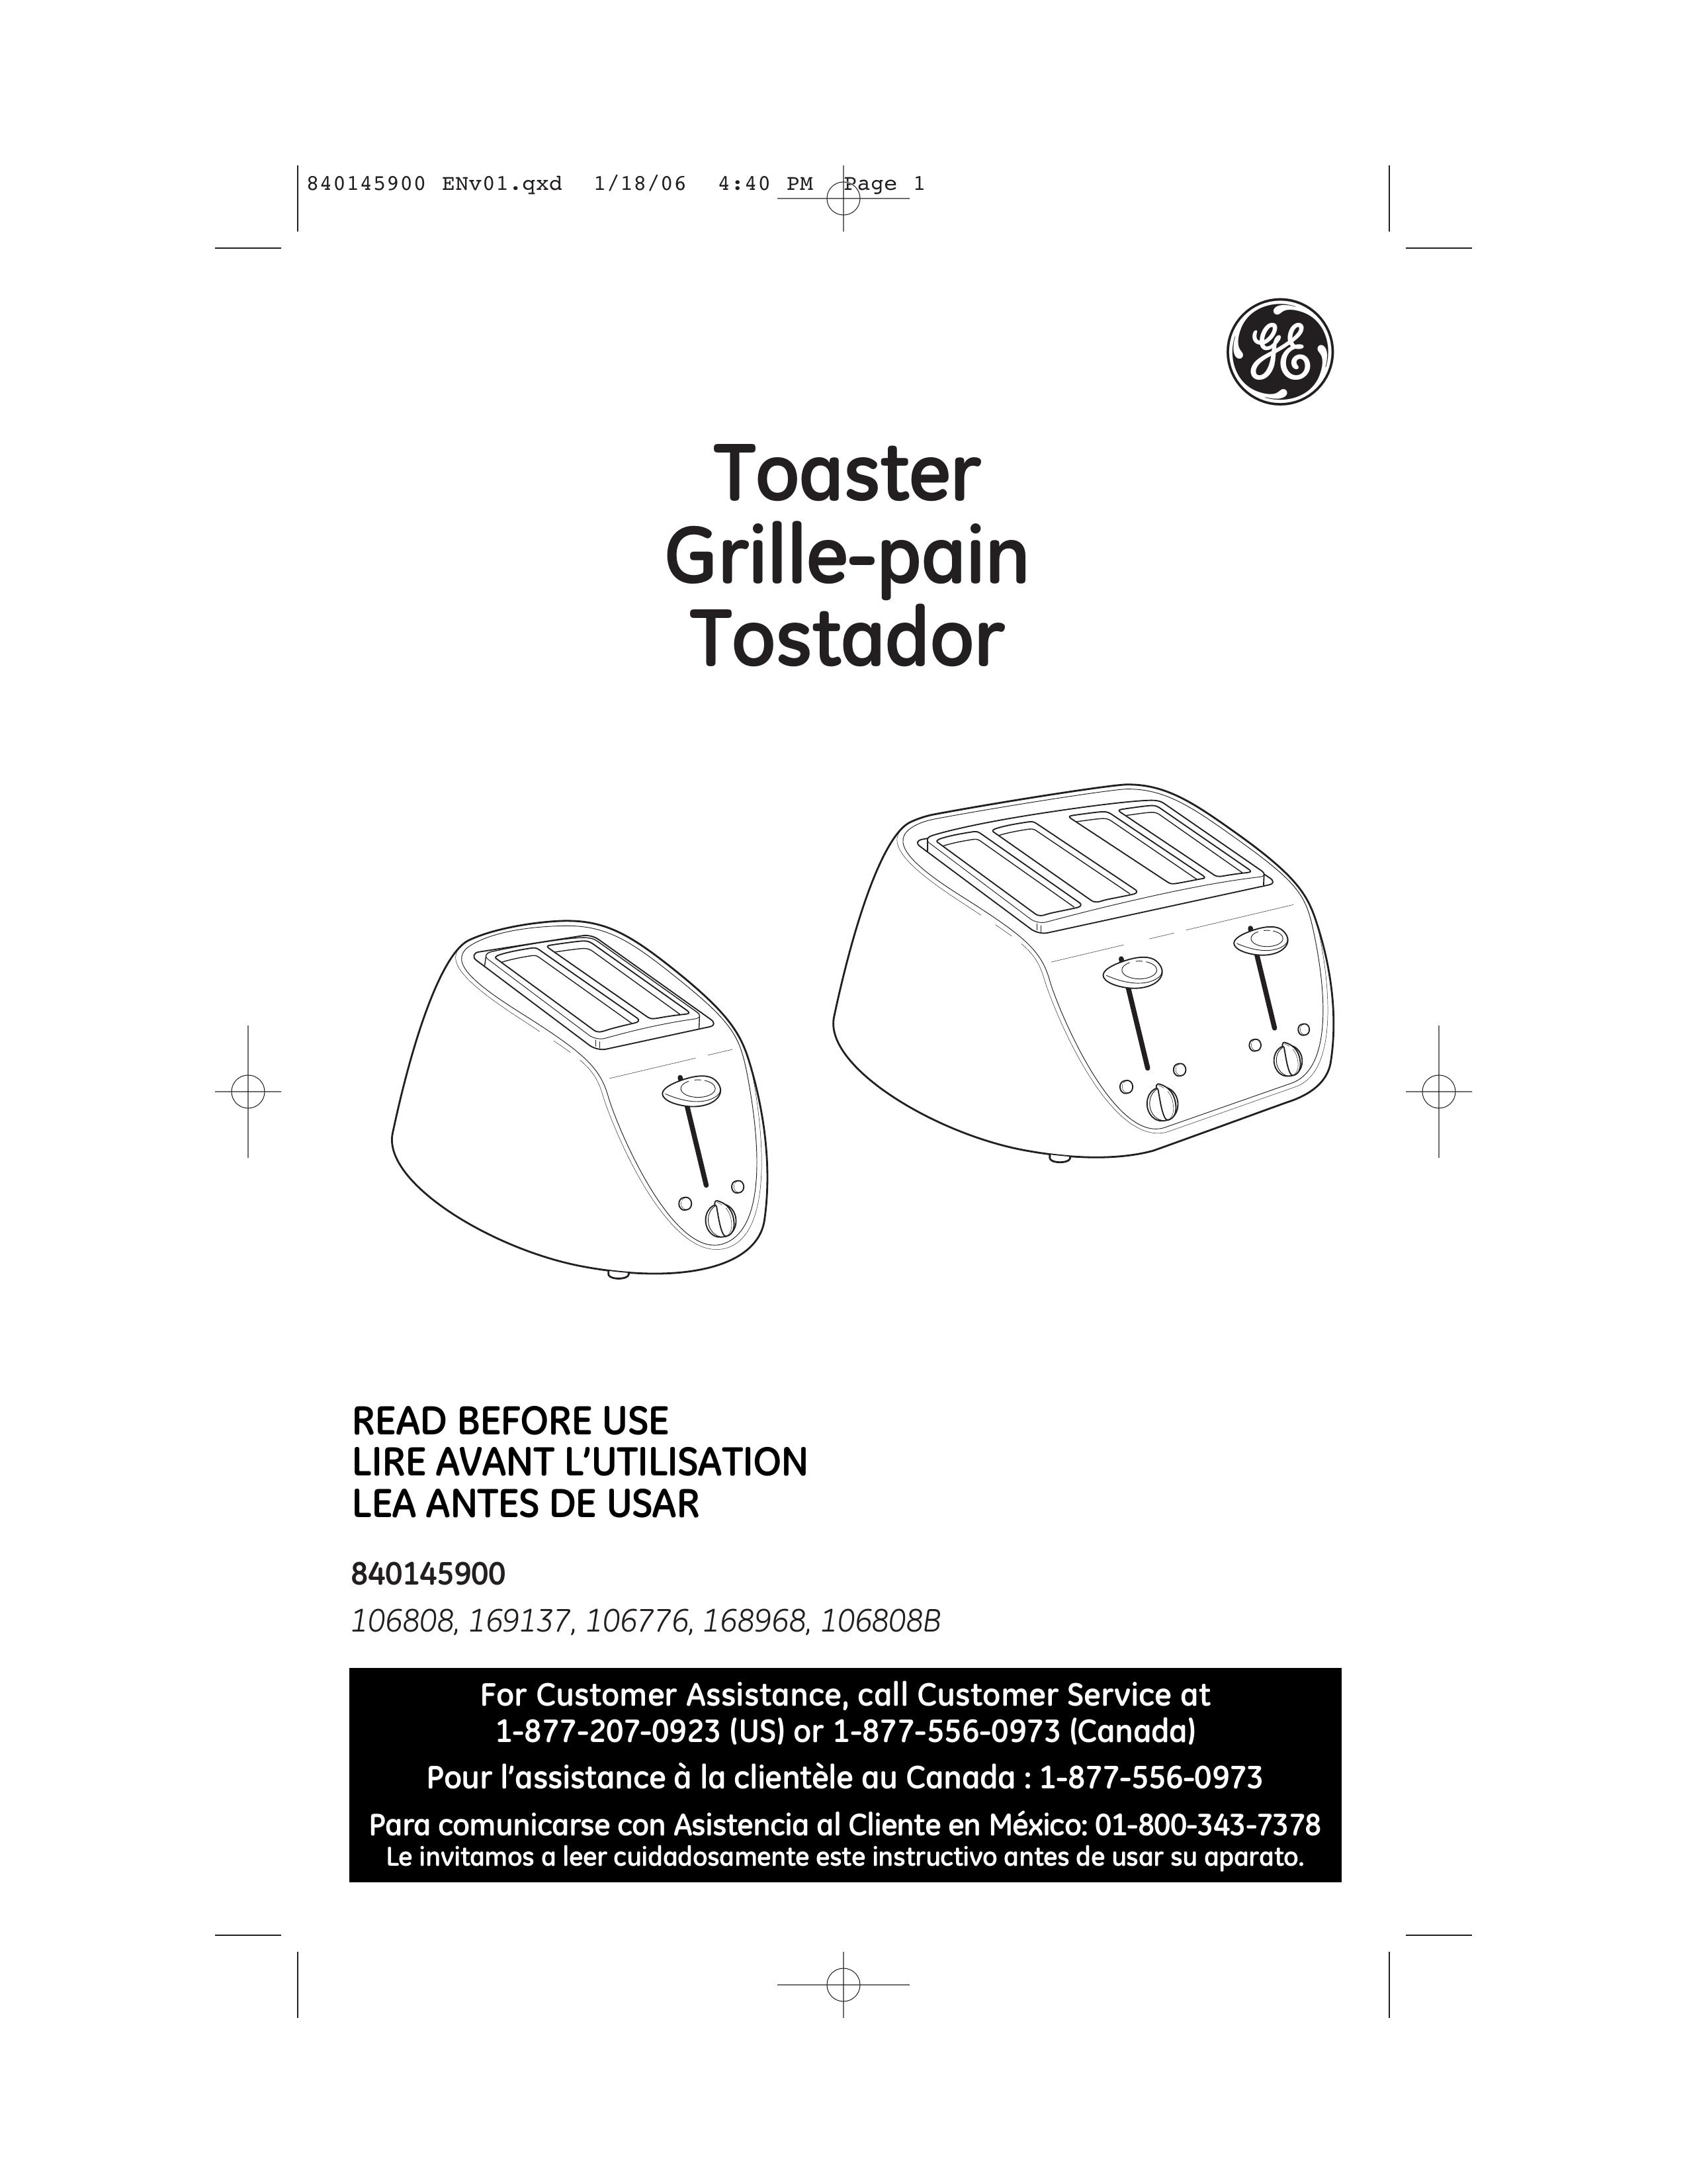 GE 106808 Toaster User Manual